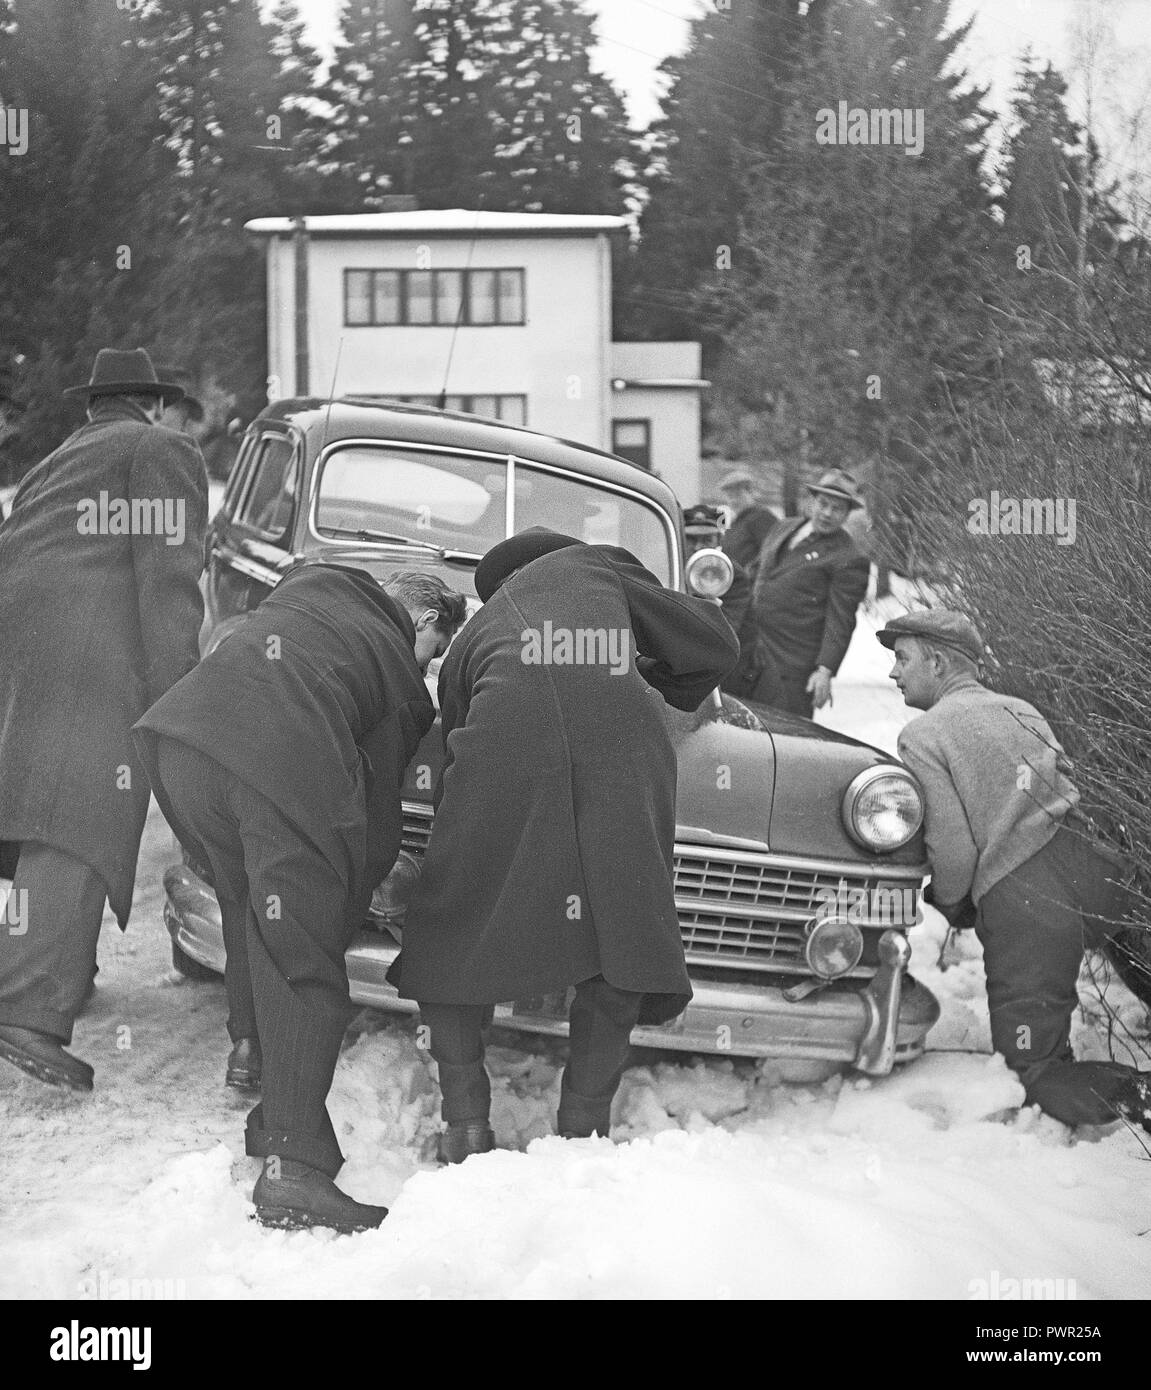 La conduite hivernale dans les années 1950 Une voiture a dérapé de la route enneigée vers le bas et est coincée dans la neige à côté de la route. Un groupe de personnes le pousse à nouveau sur la route. Suède 1949. Photo Kristoffersson réf AU109-5 Banque D'Images